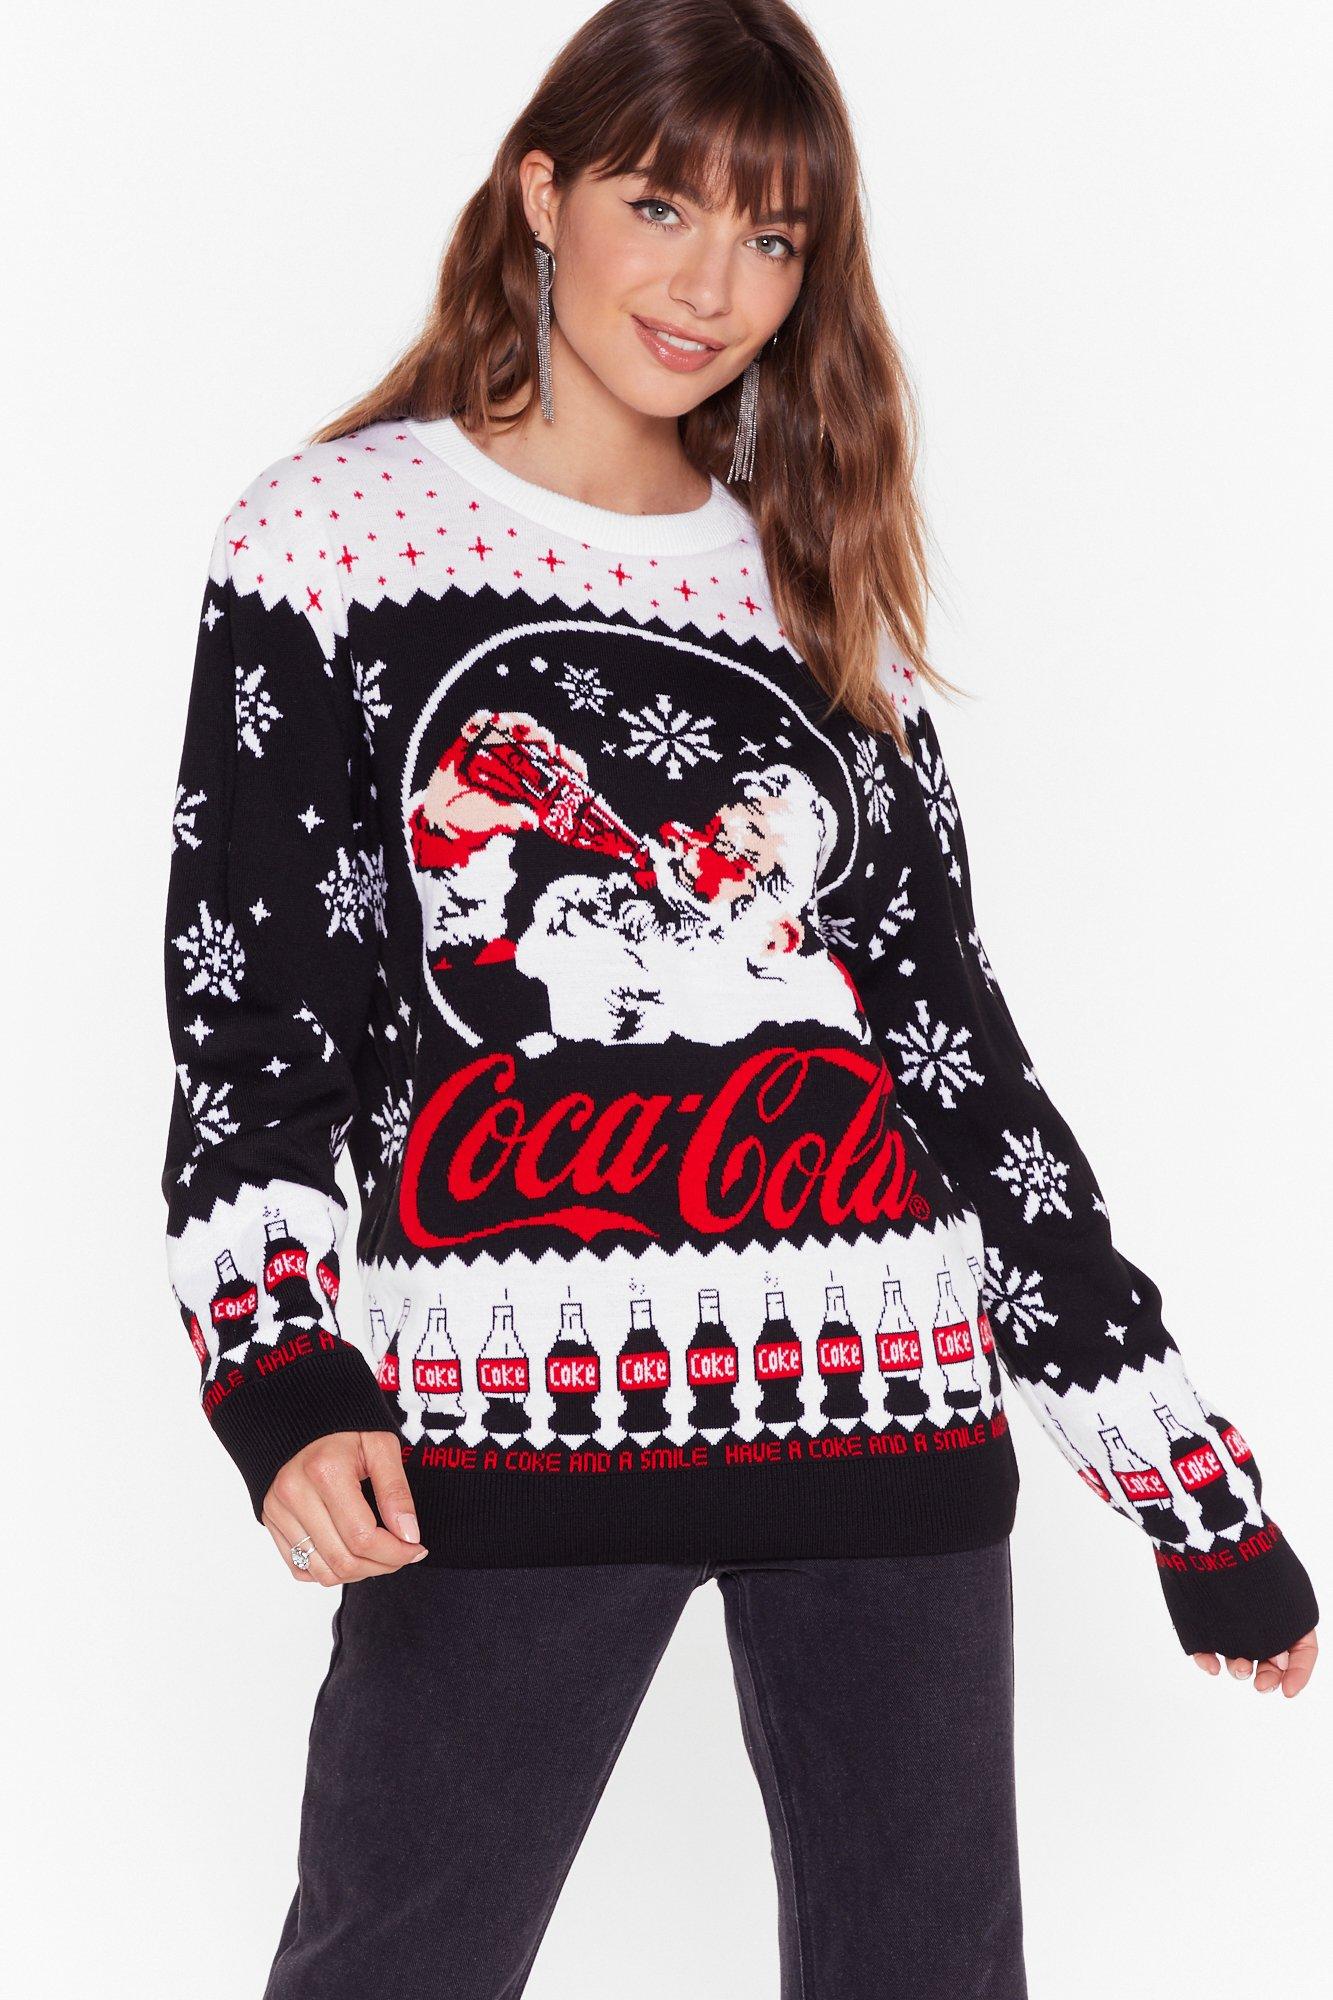 coca cola christmas sweatshirt